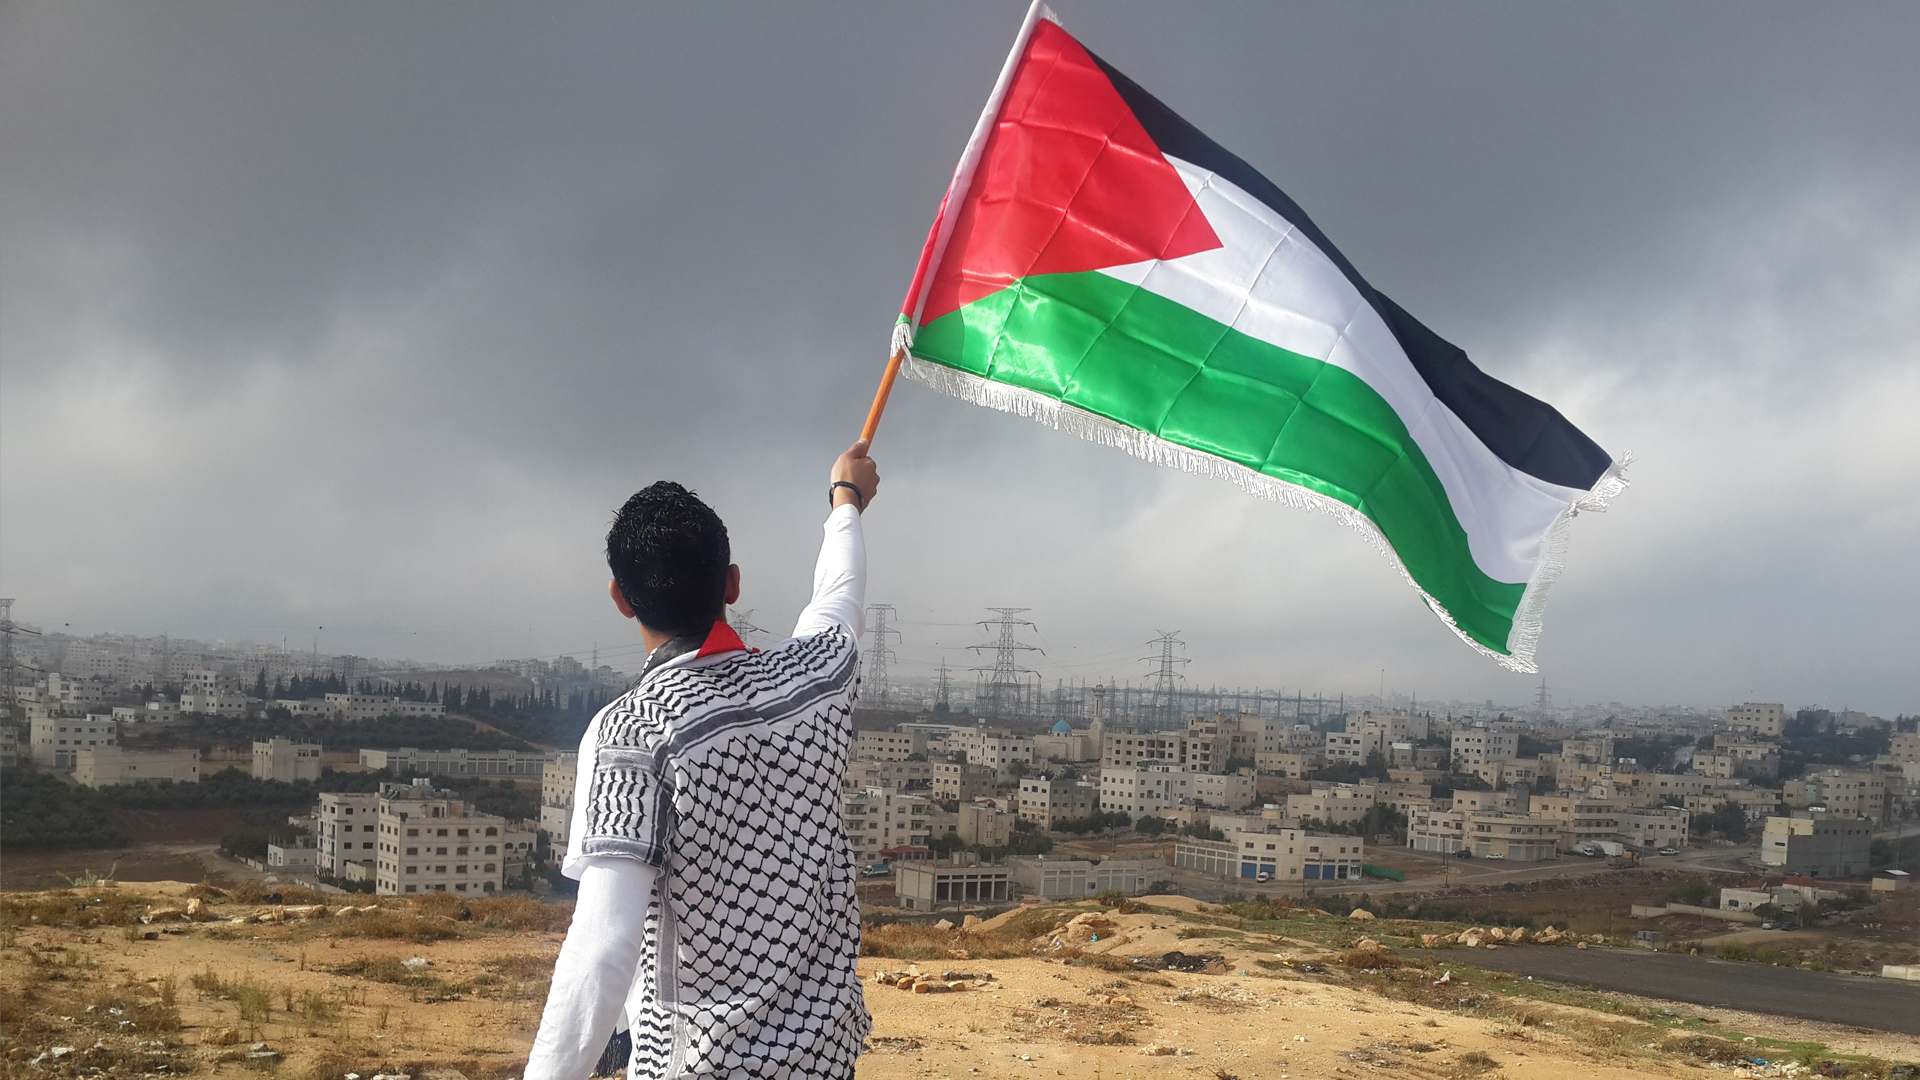 Israel-Palestina: ¡No a la invasión de Gaza! ¡Fin de la ocupación!